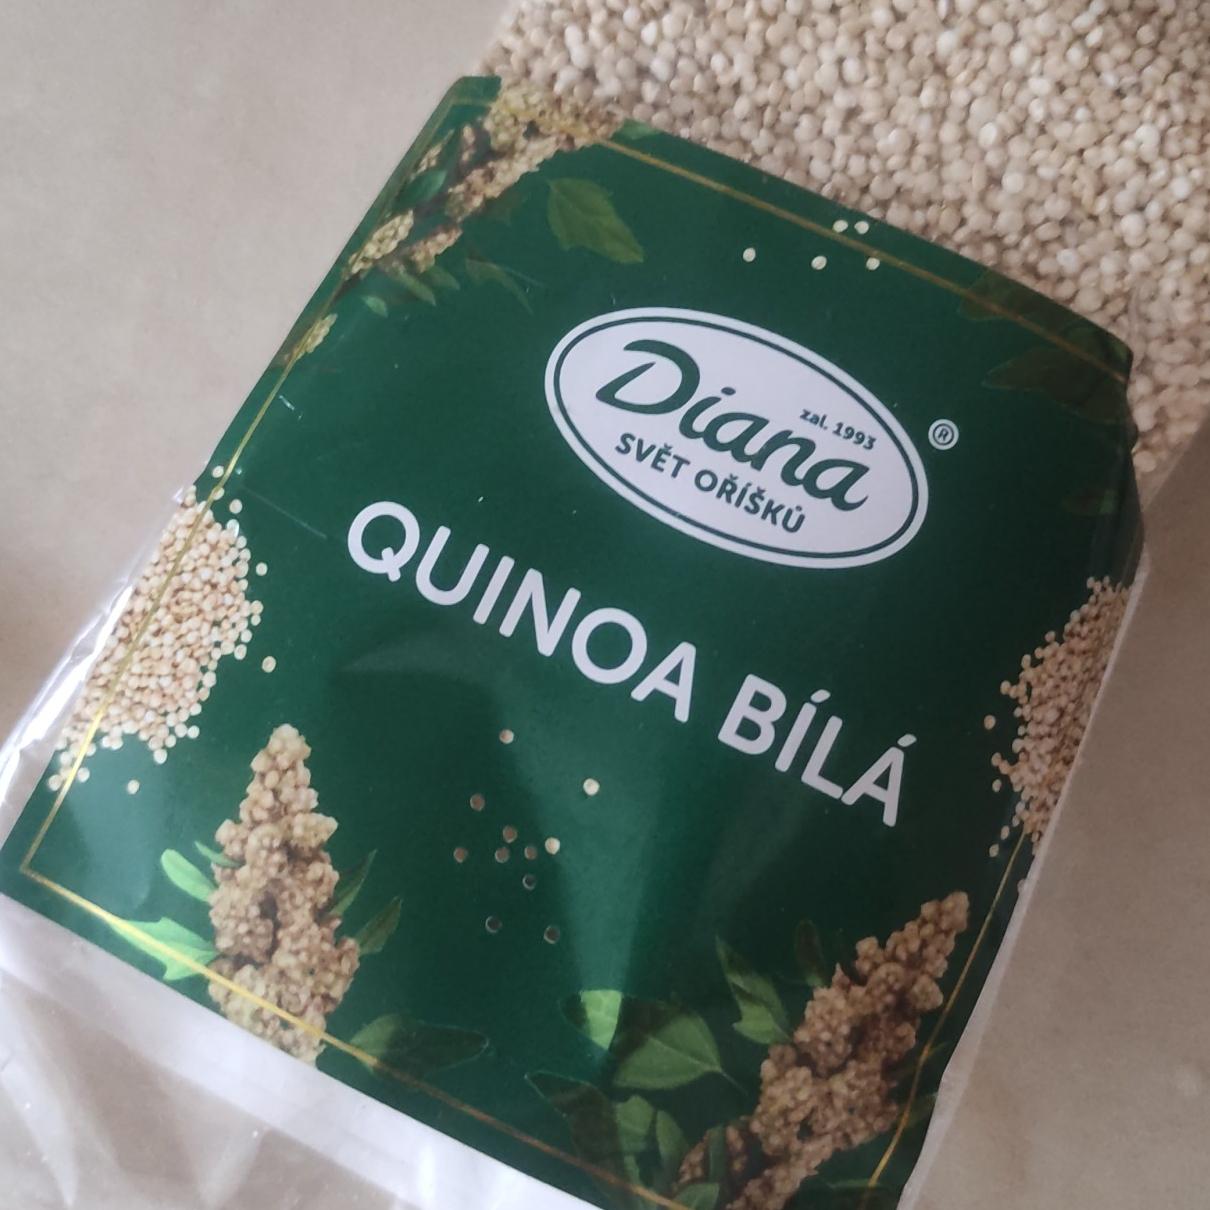 Fotografie - Quinoa bílá Diana Svět oříšků